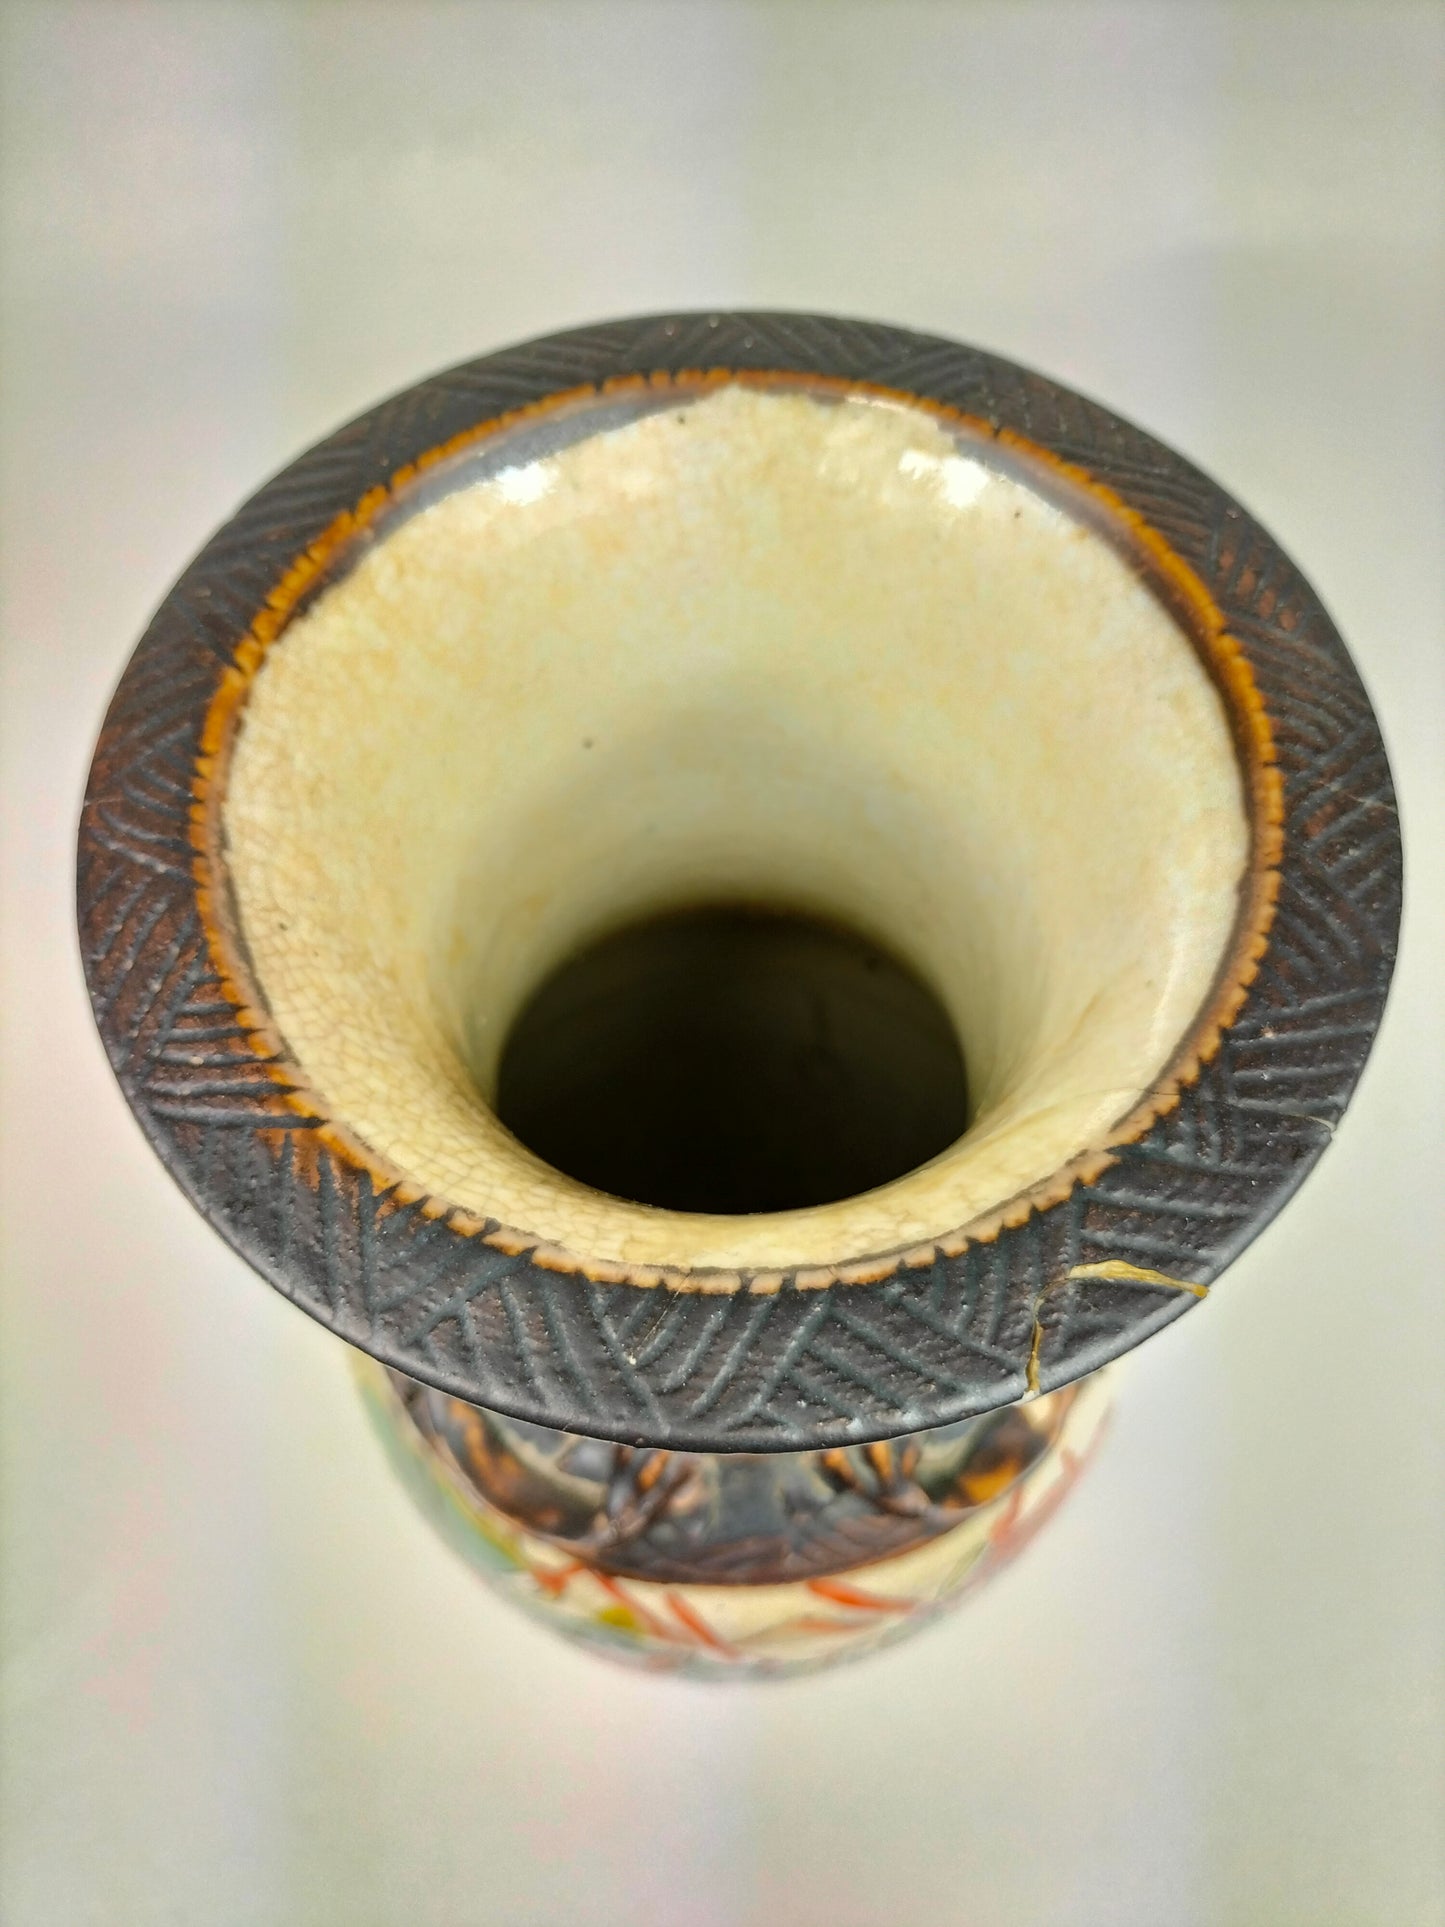 Ancien vase chinois de Nankin à décor de guerriers // Dynastie Qing - 19e siècle